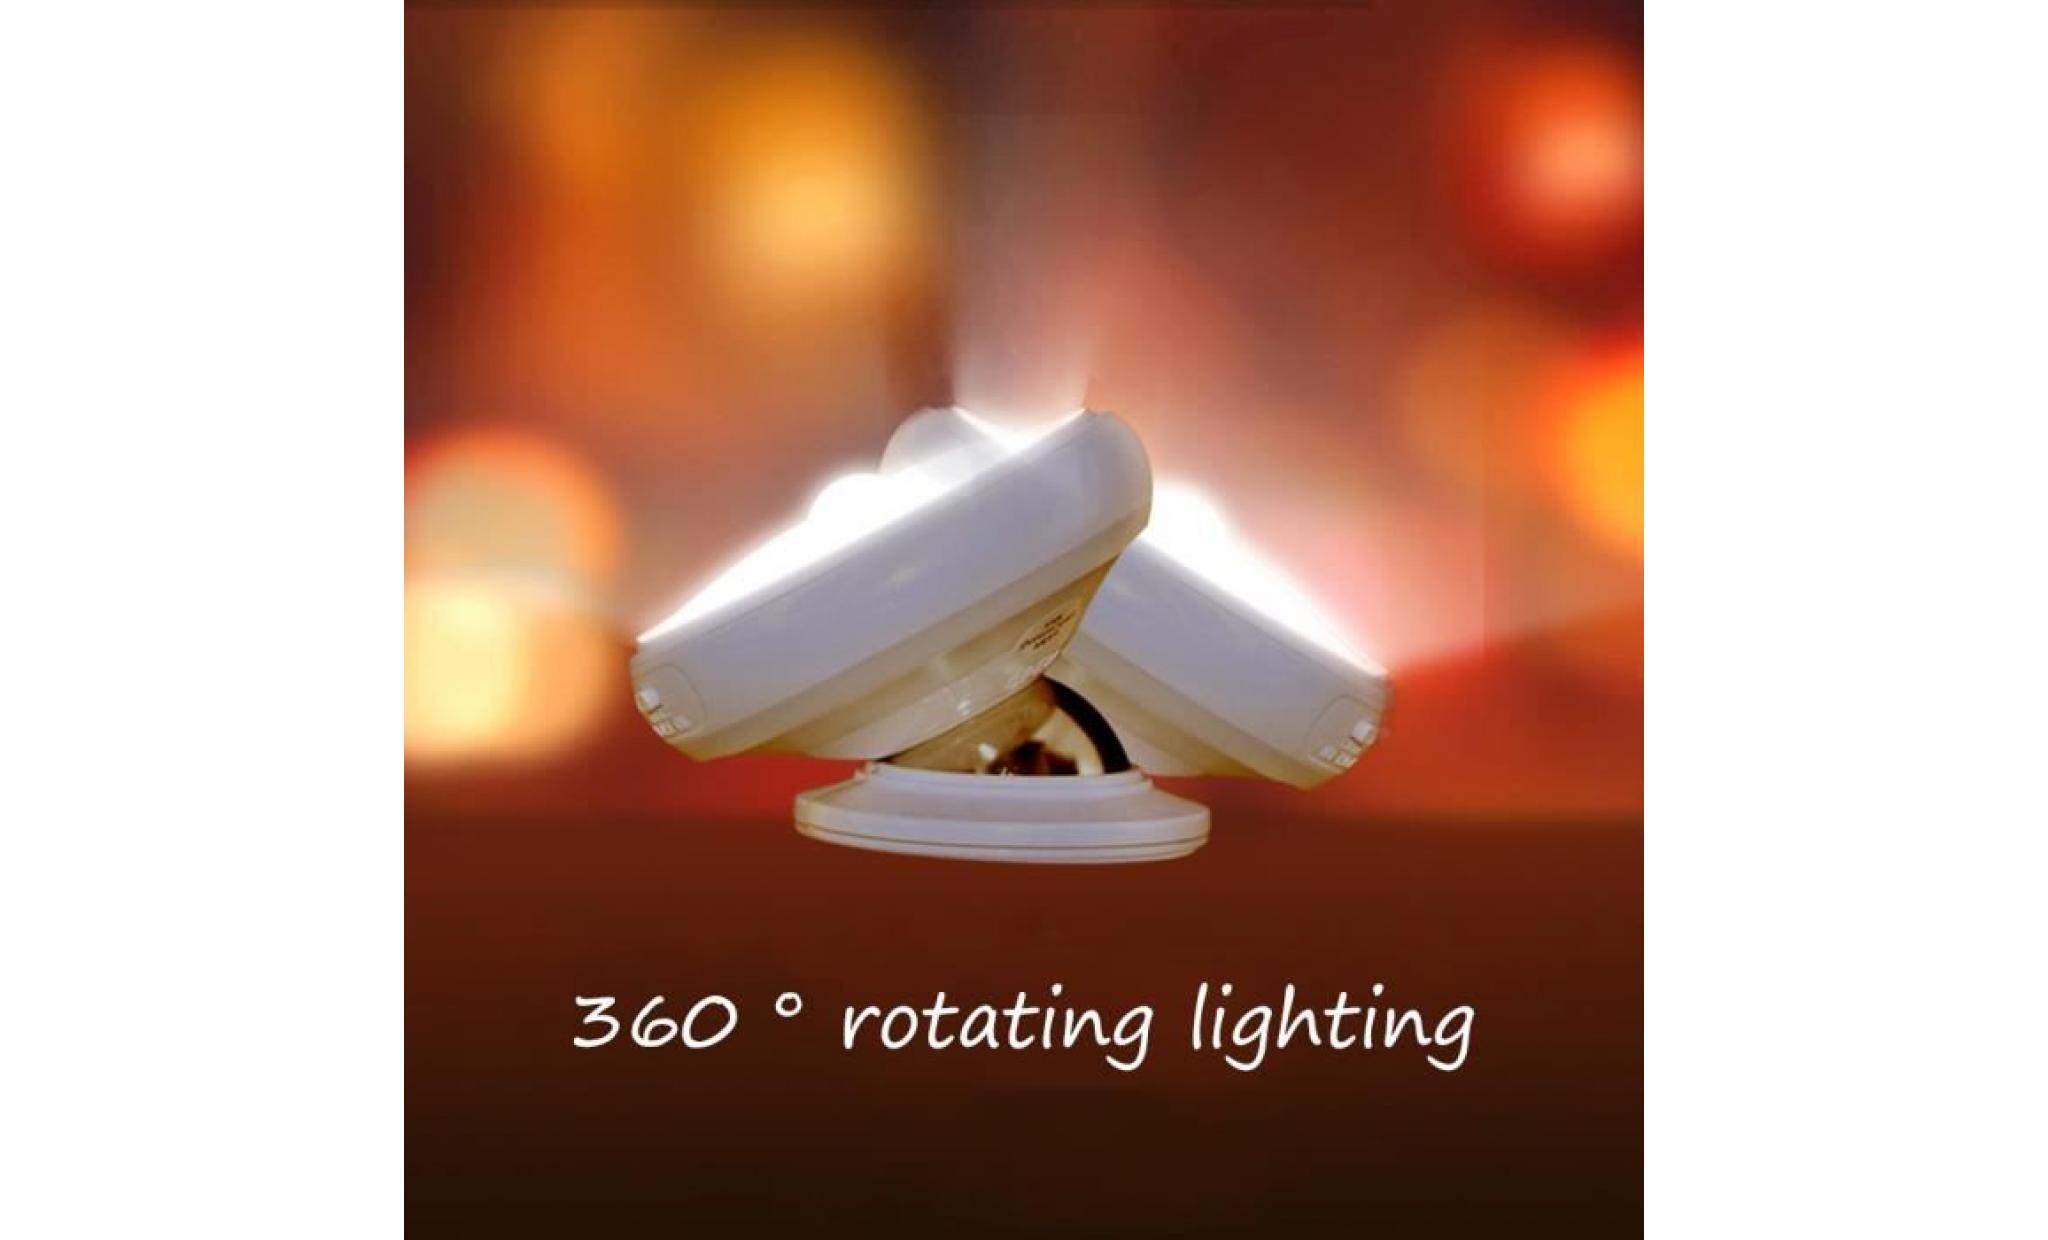 love@ 360 usb degré de rotation rechargeable capteur de mouvement led night light lampe de table multicolore_mosakog1989